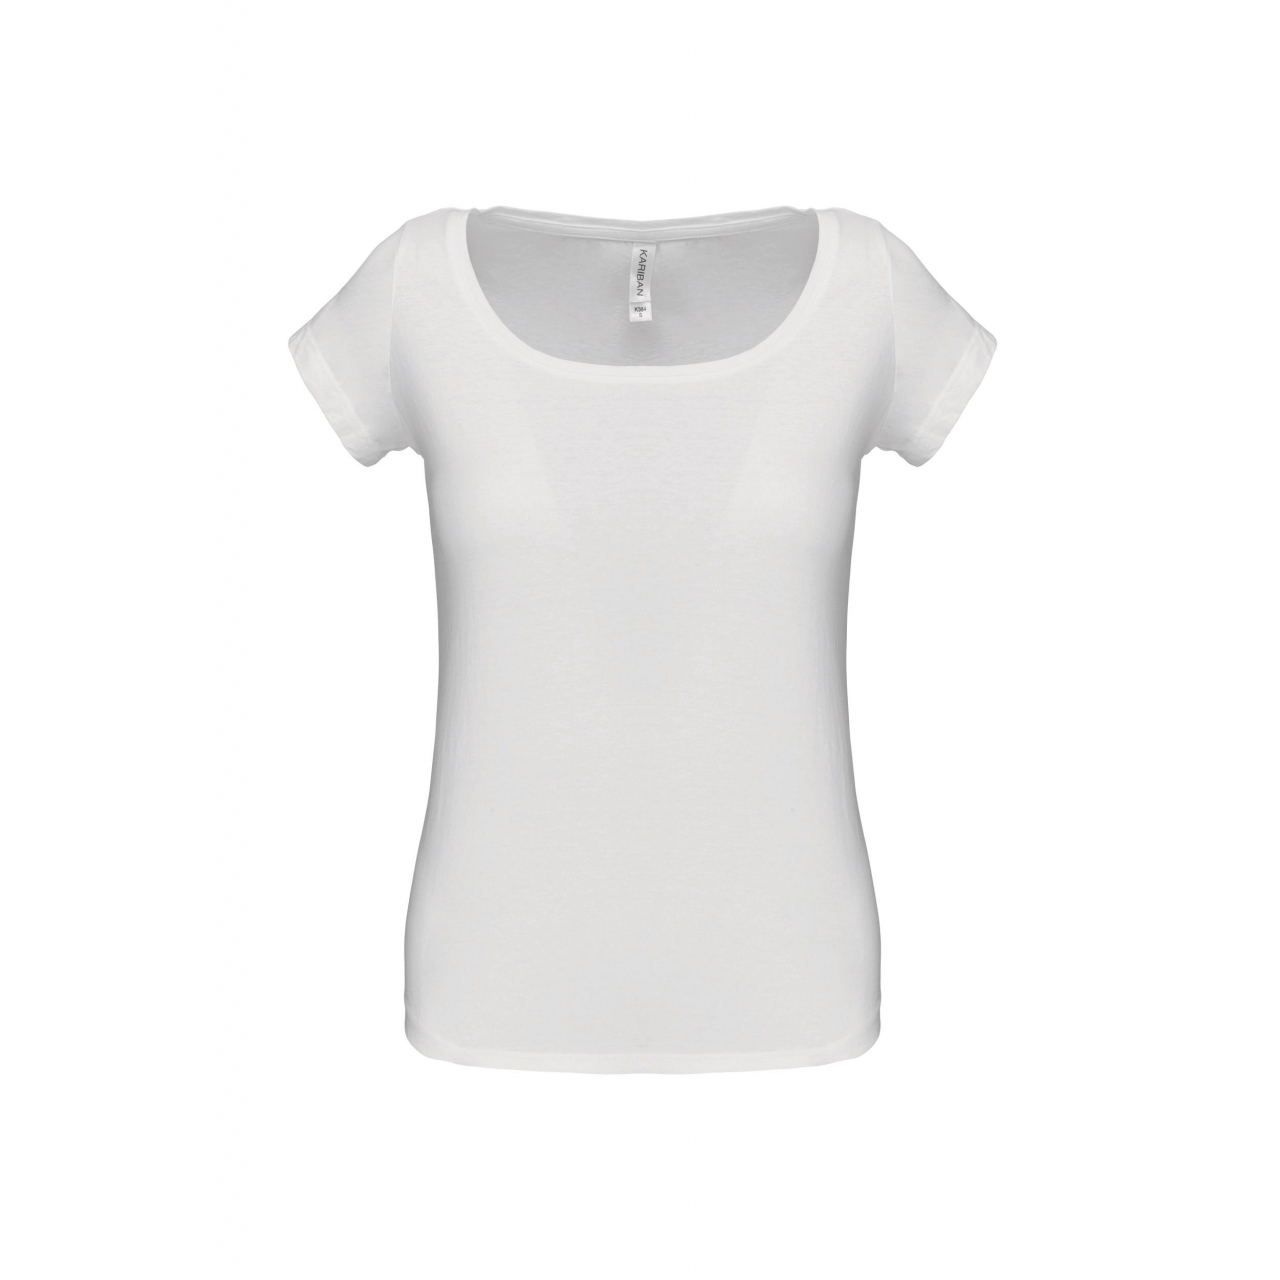 Dámské tričko Kariban s lodičkovým výstřihem - bílé, L